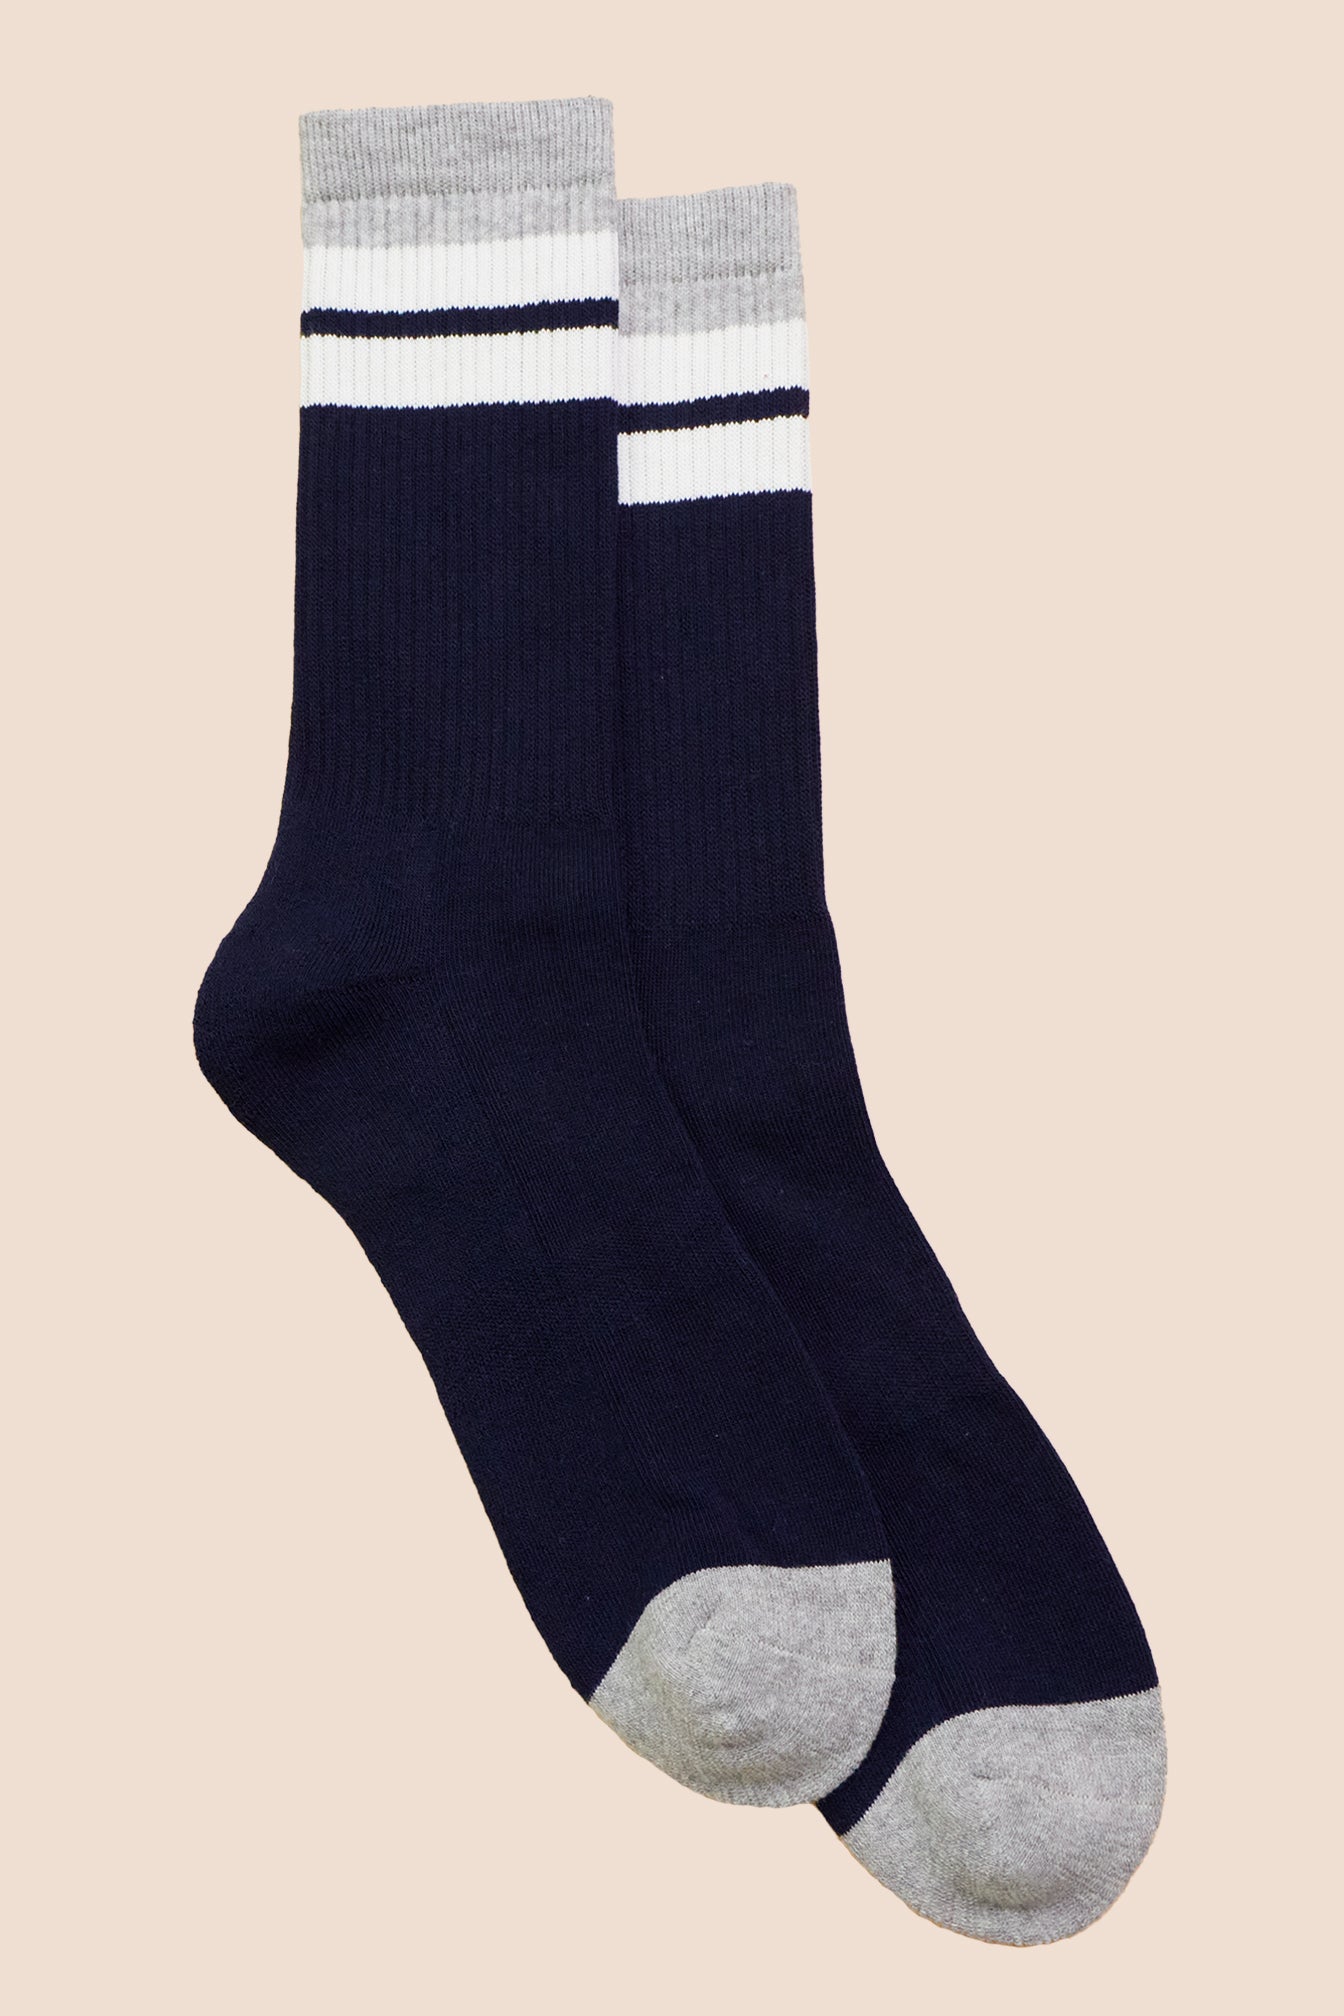 Petrone-chaussettes-tennis-coton-bio-retro-hautes-homme-bleu marine-gris clair-posees